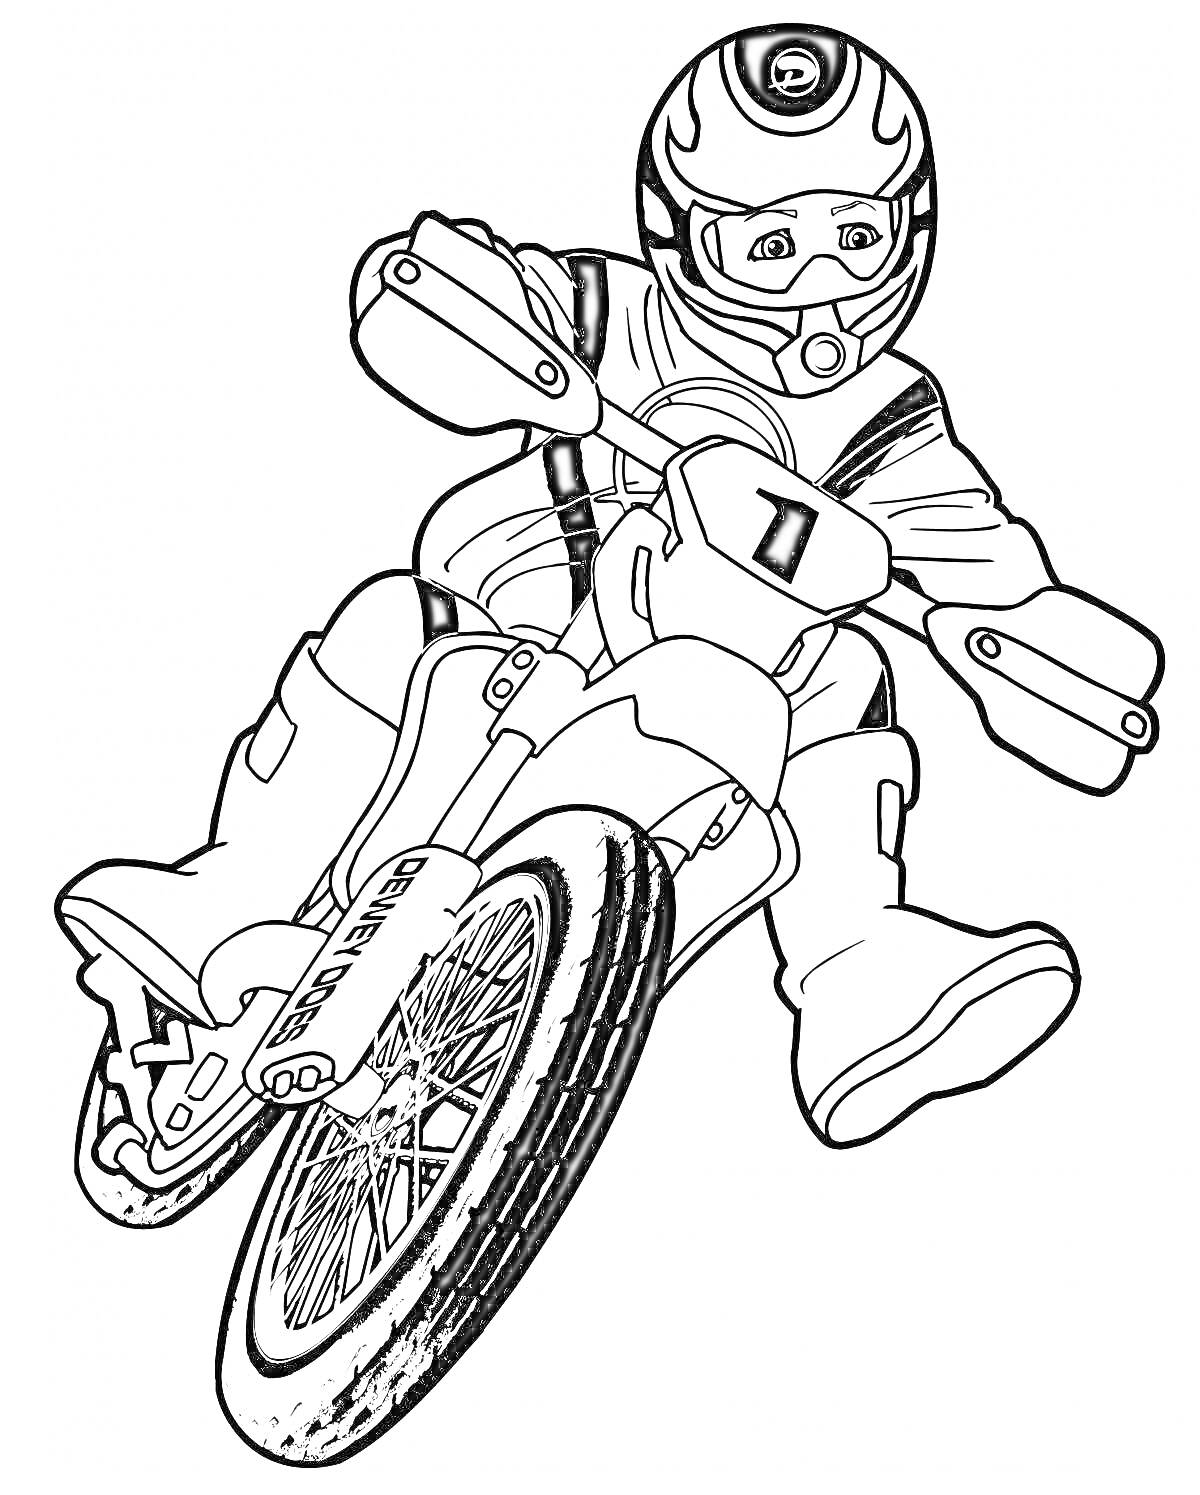 Раскраска Мотоциклист на спортивном мотоцикле с номером 1 в полной экипировке